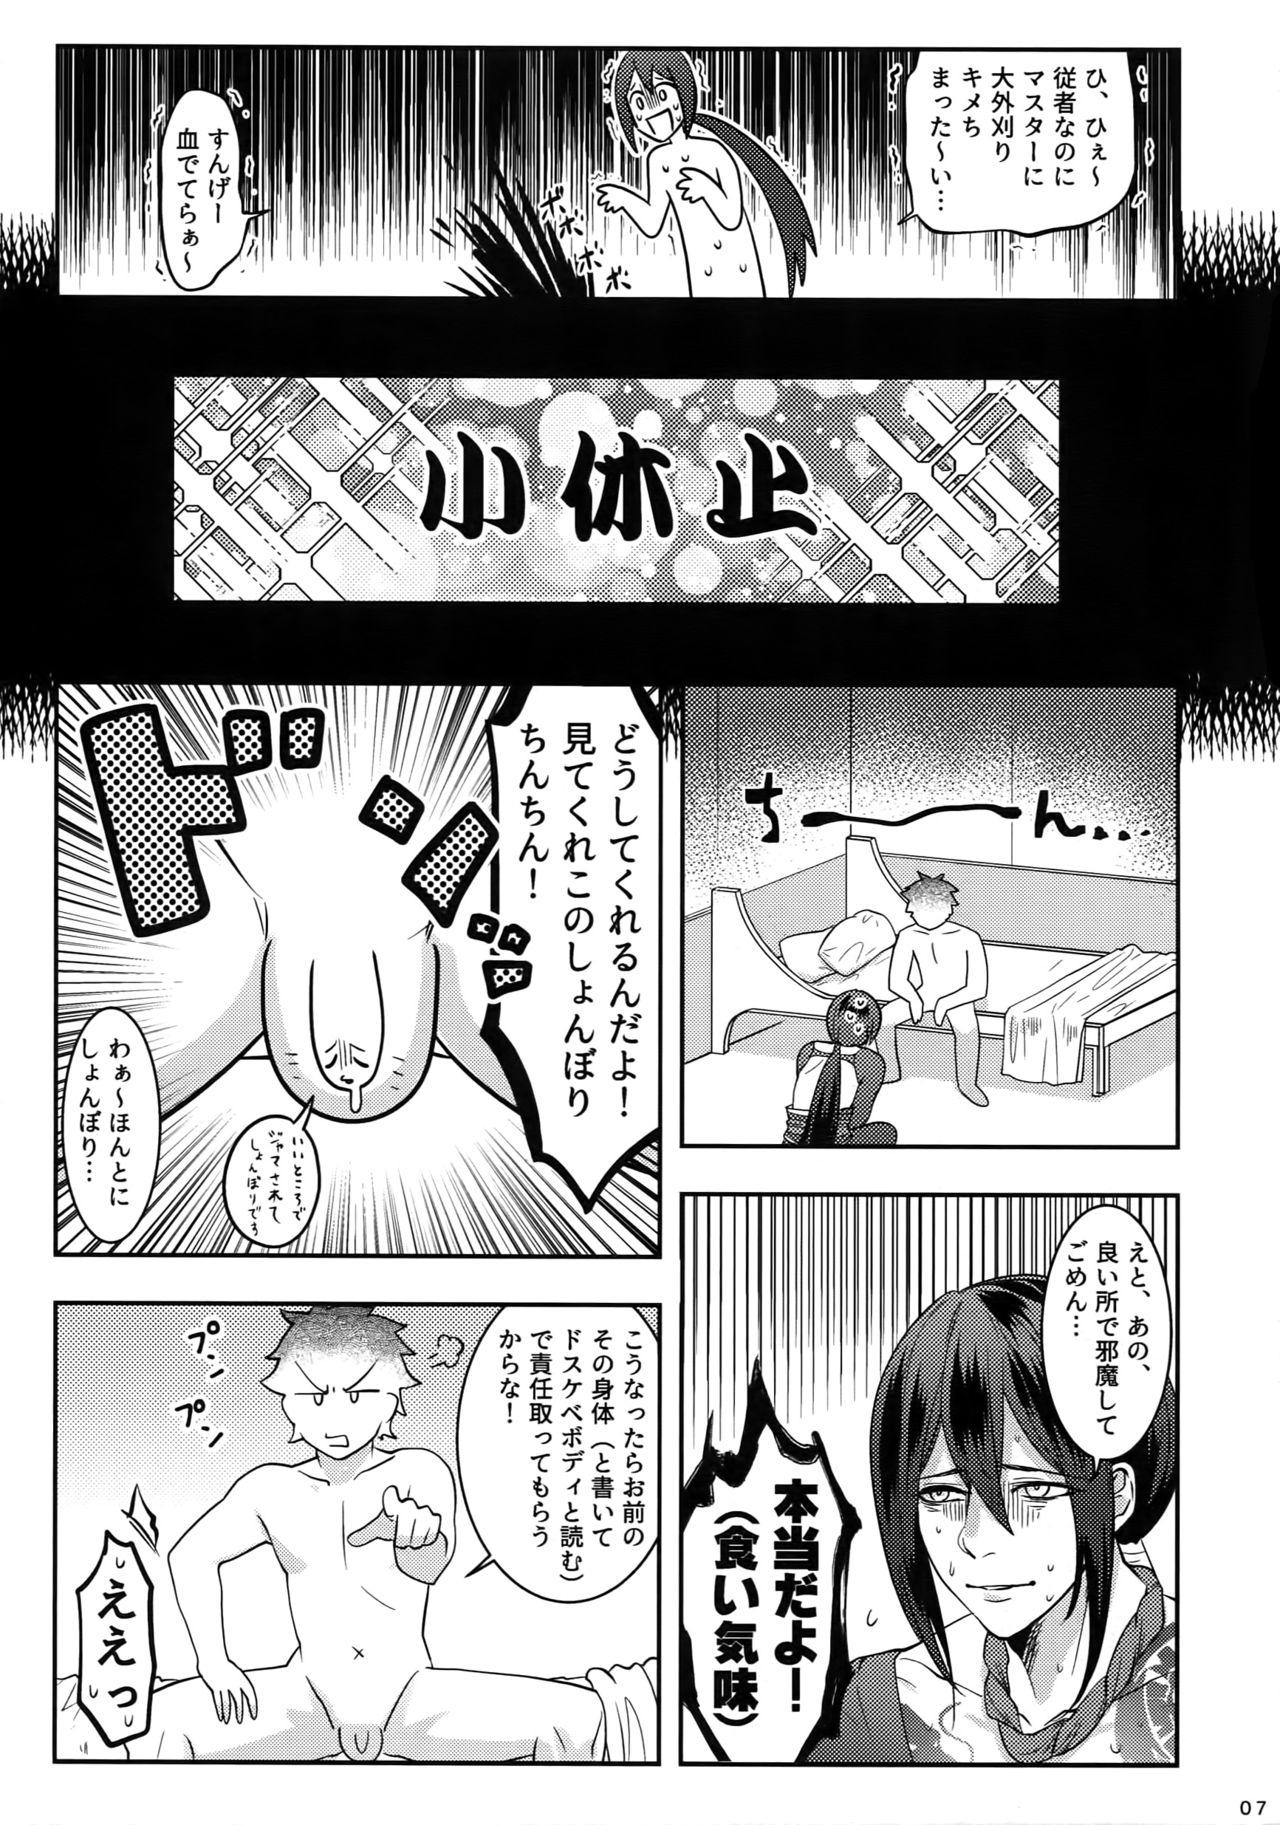 Bikini Reiju no Mudazukai! Yarasete Kure Shinjuku no Assassin! - Fate grand order Speculum - Page 6